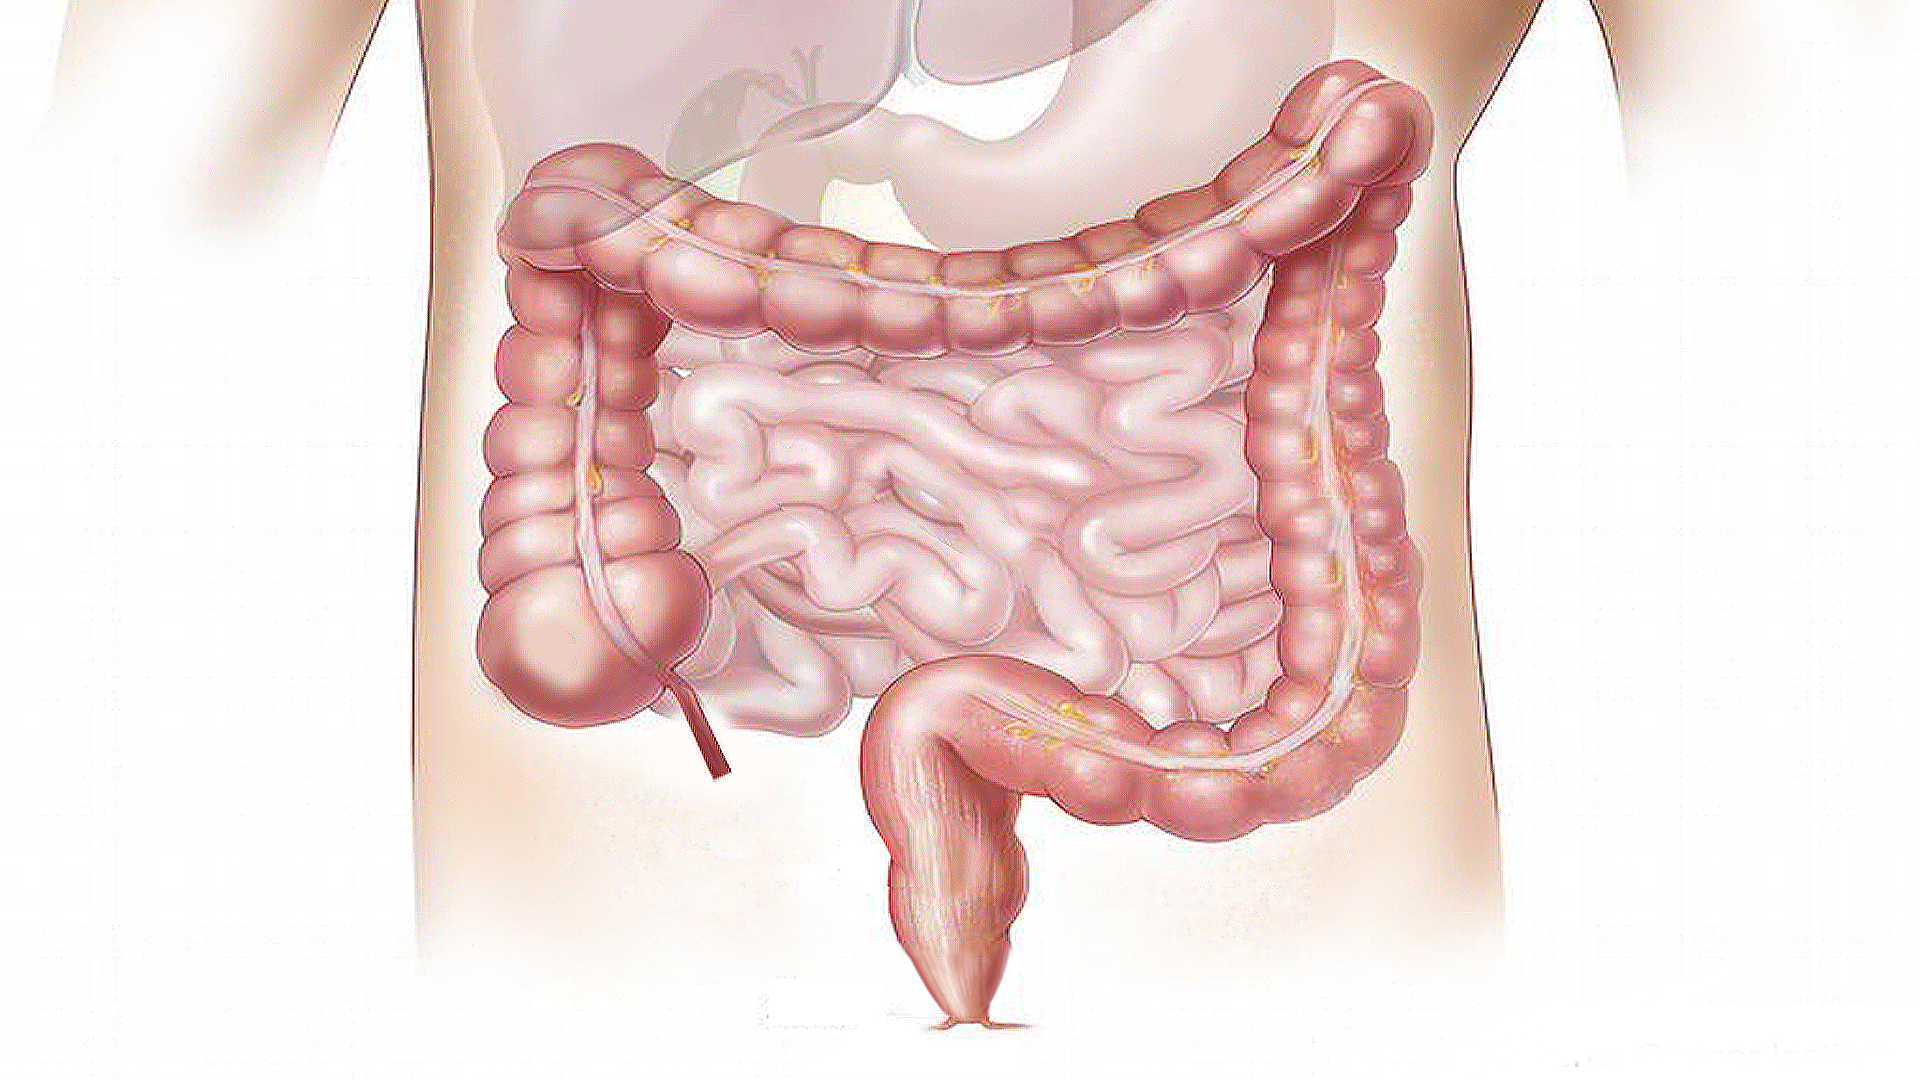 Foto de capa do artigo "Síndrome do Intestino Permeável: o que é, causas e sintomas"